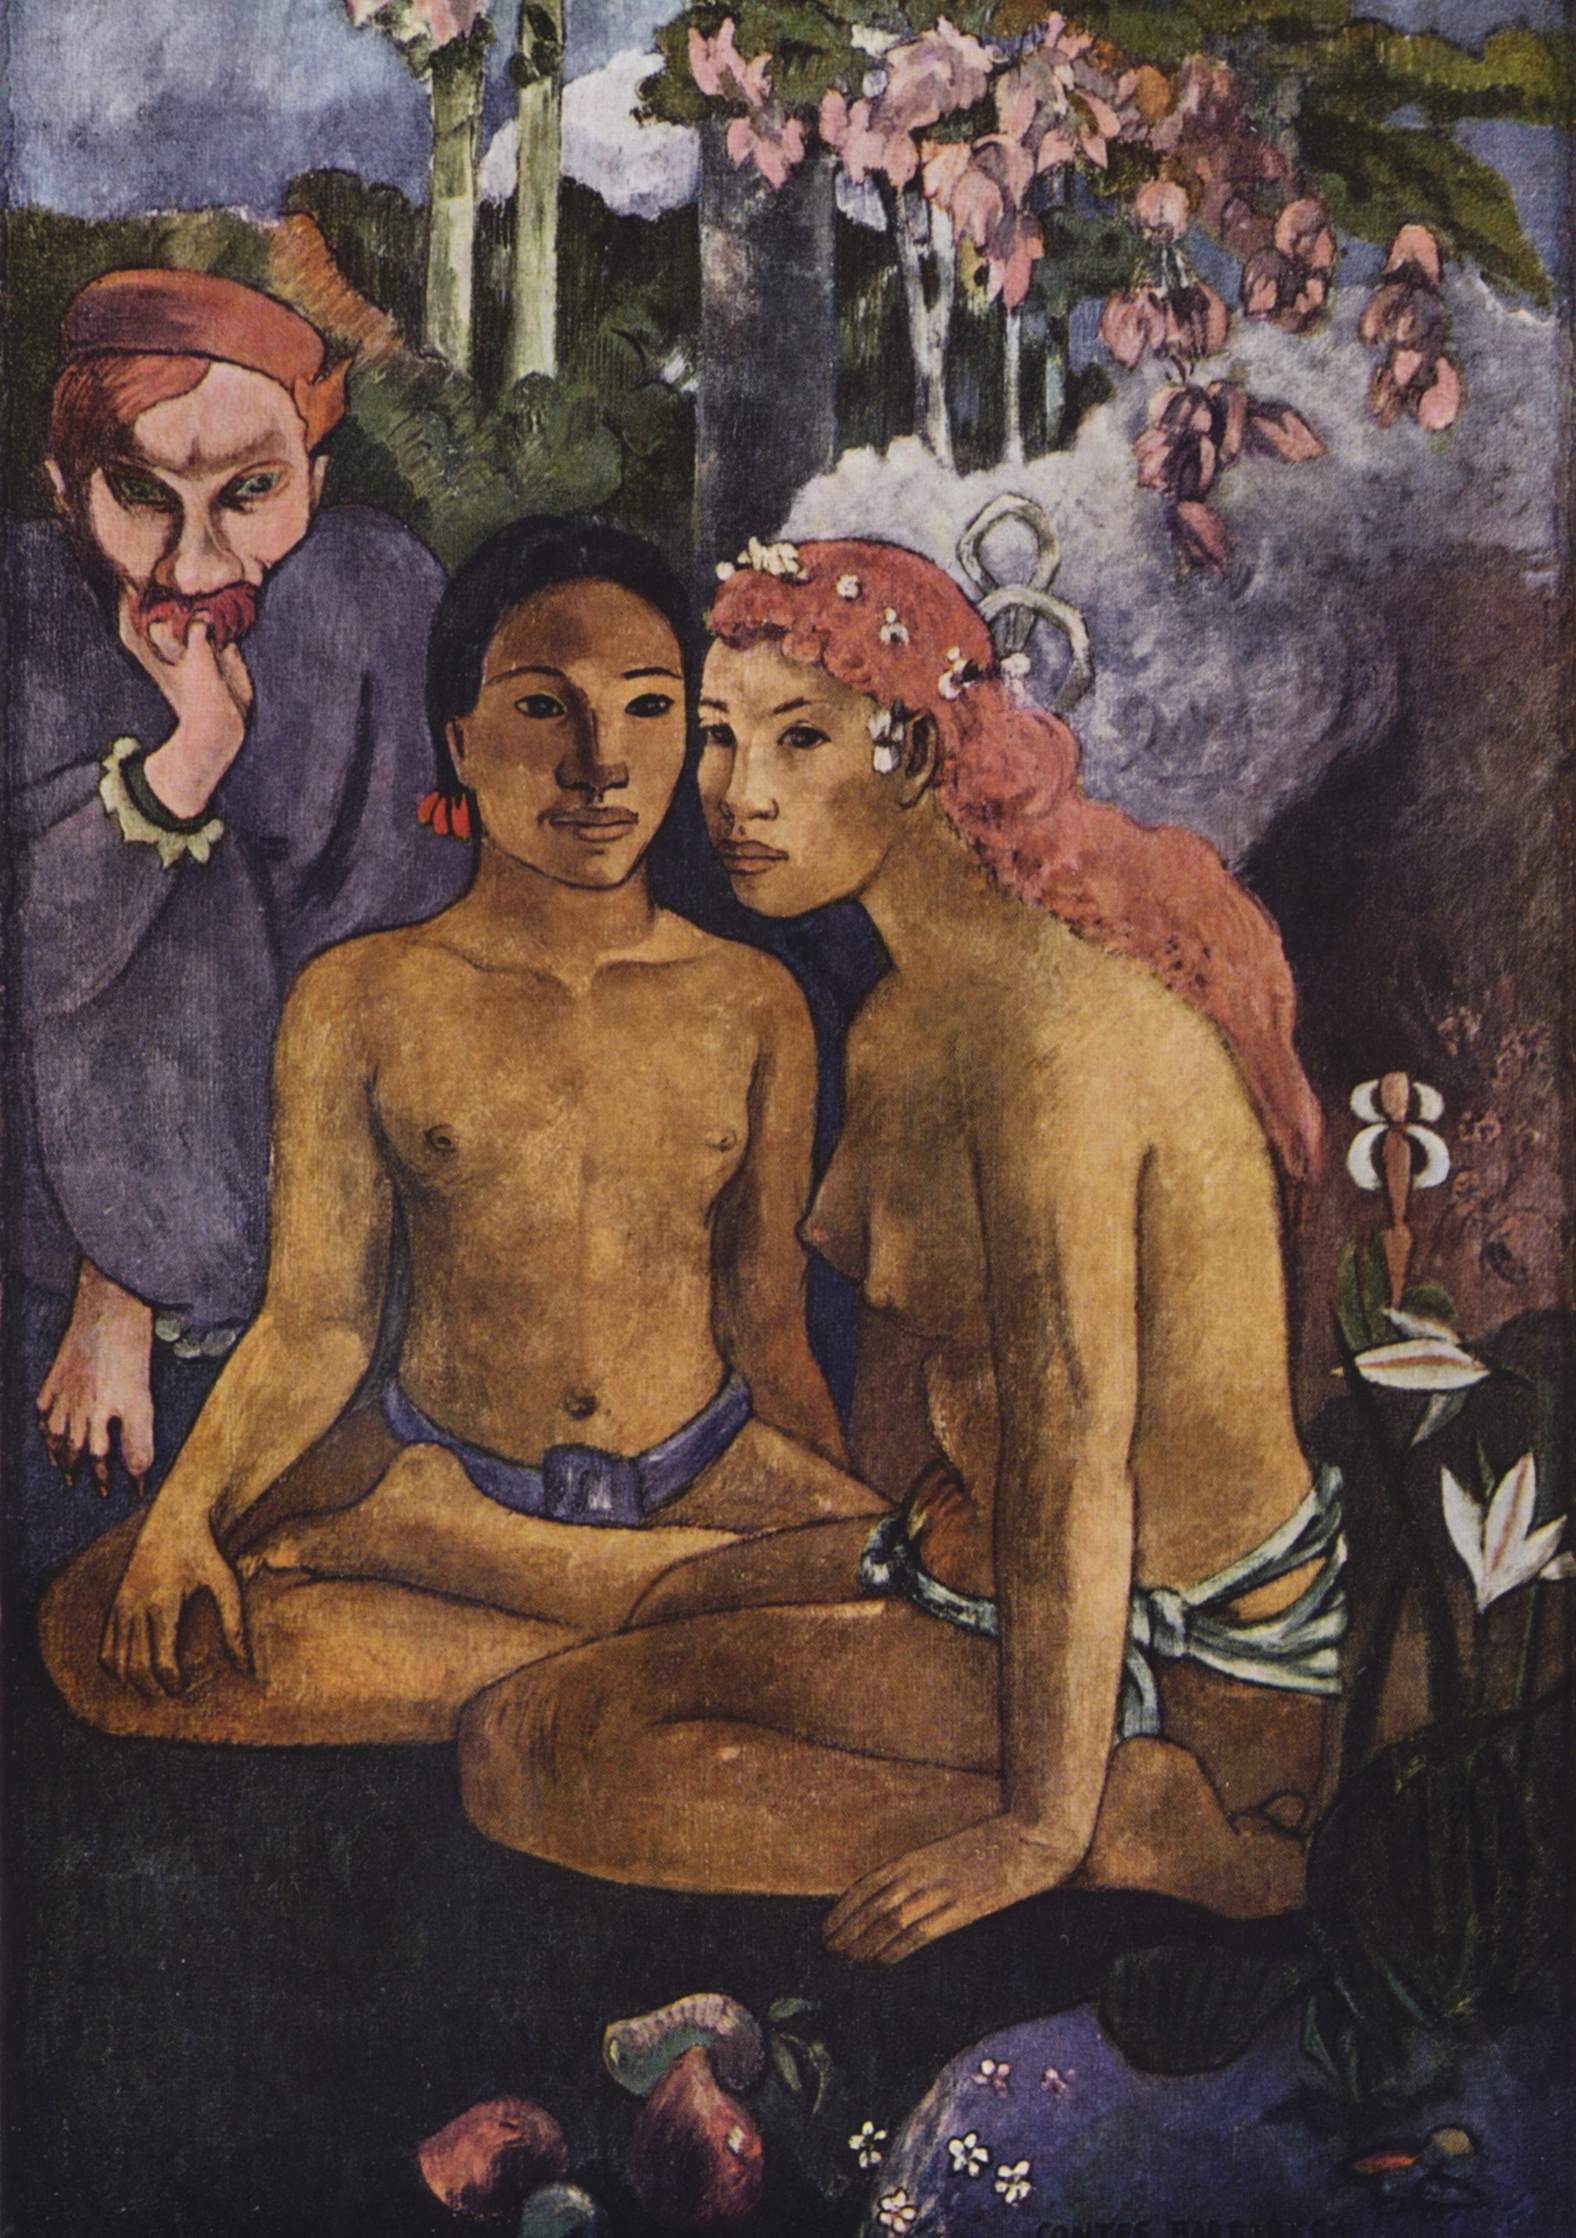 Grausame Geschichten (exotische Redewendung) by Paul Gauguin - 1902 - 130 × 92 cm Museum Folkwang